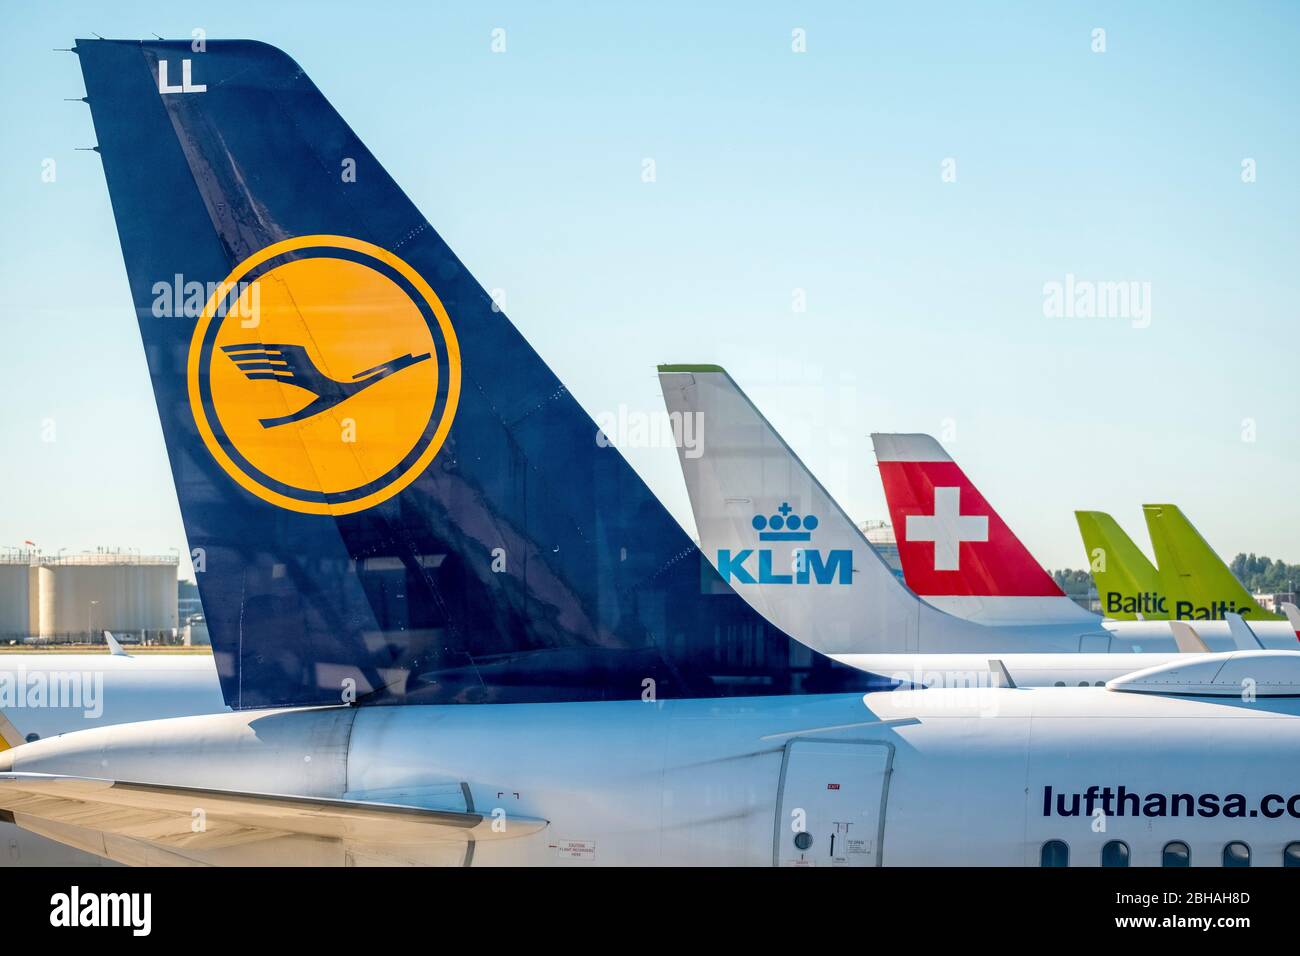 Stabilisateurs verticaux des compagnies aériennes Lufthansa, KLM, Swiss Air et Baltic Air à l'aéroport d'Amsterdam Schiphol, Noord-Holland, Pays-Bas, Europe Banque D'Images